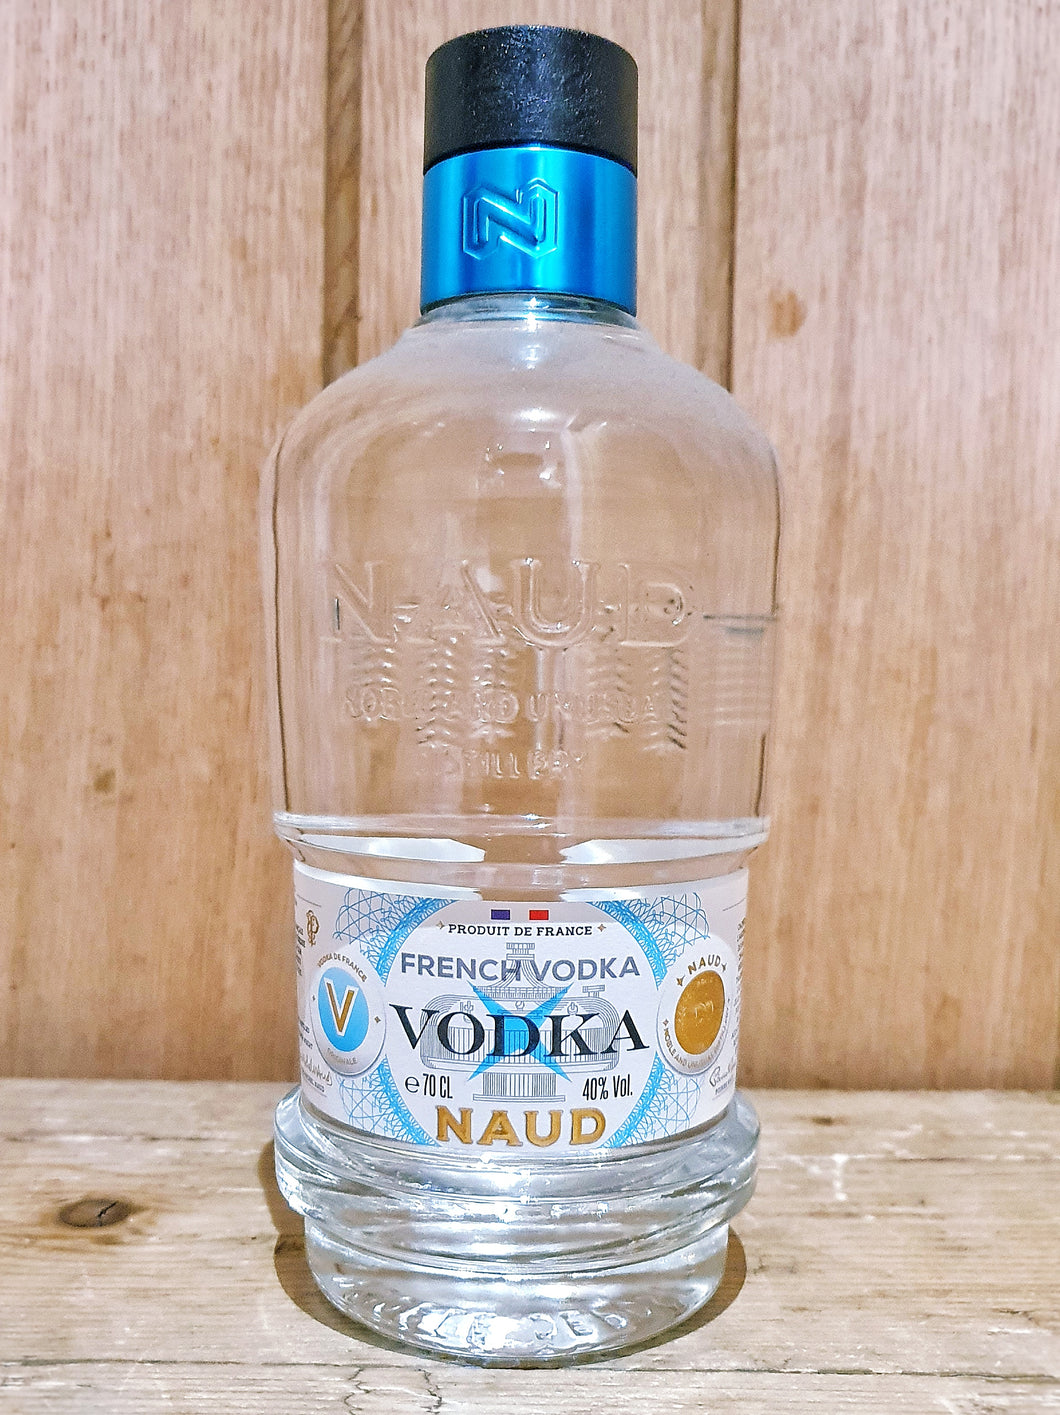 NAUD Vodka